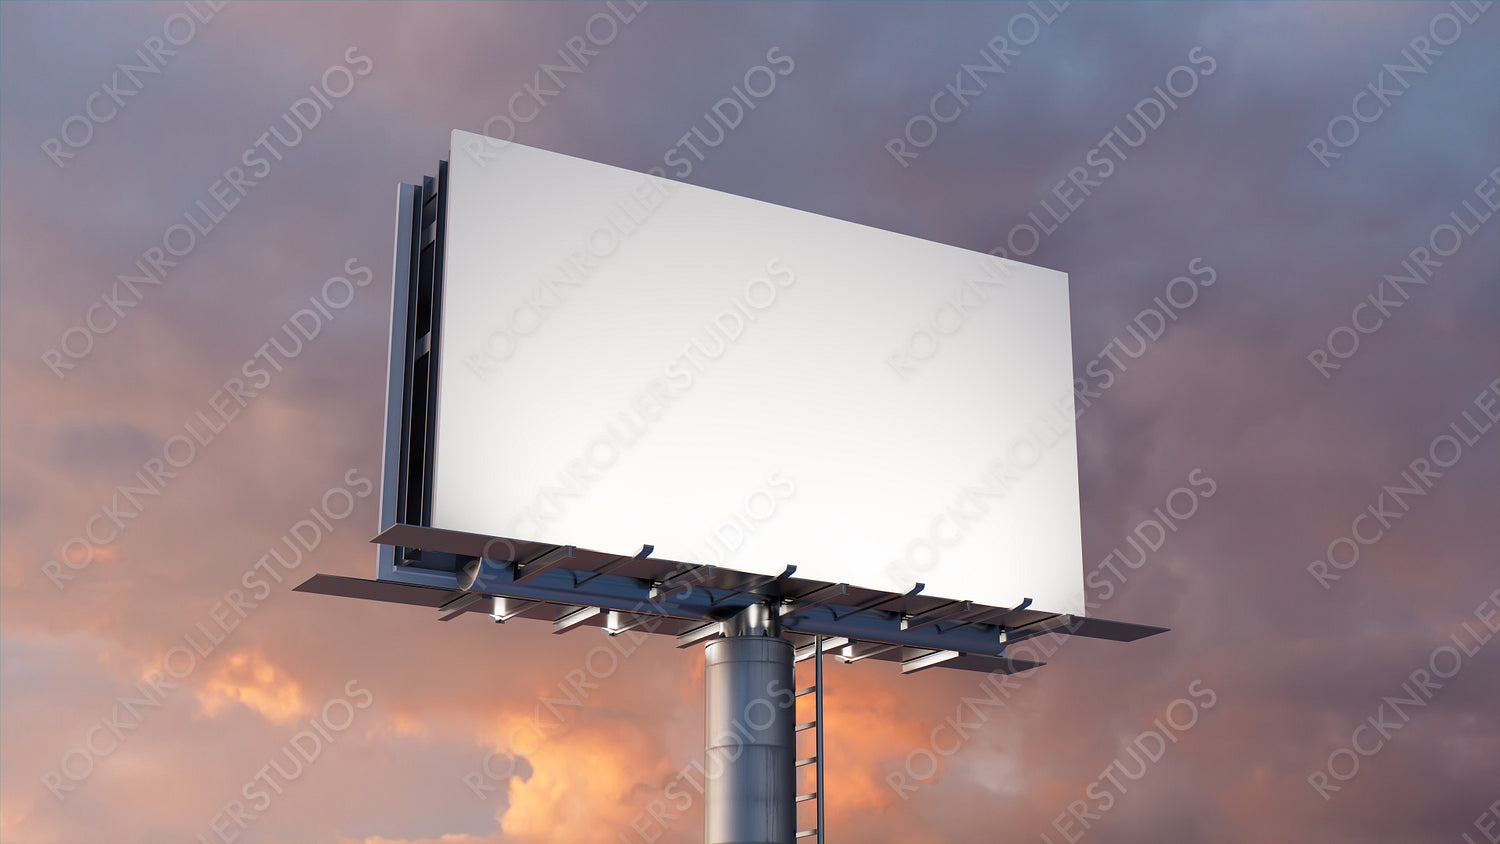 Marketing Billboard. Blank Large Format Sign against a Dusk Sky. Design Template.